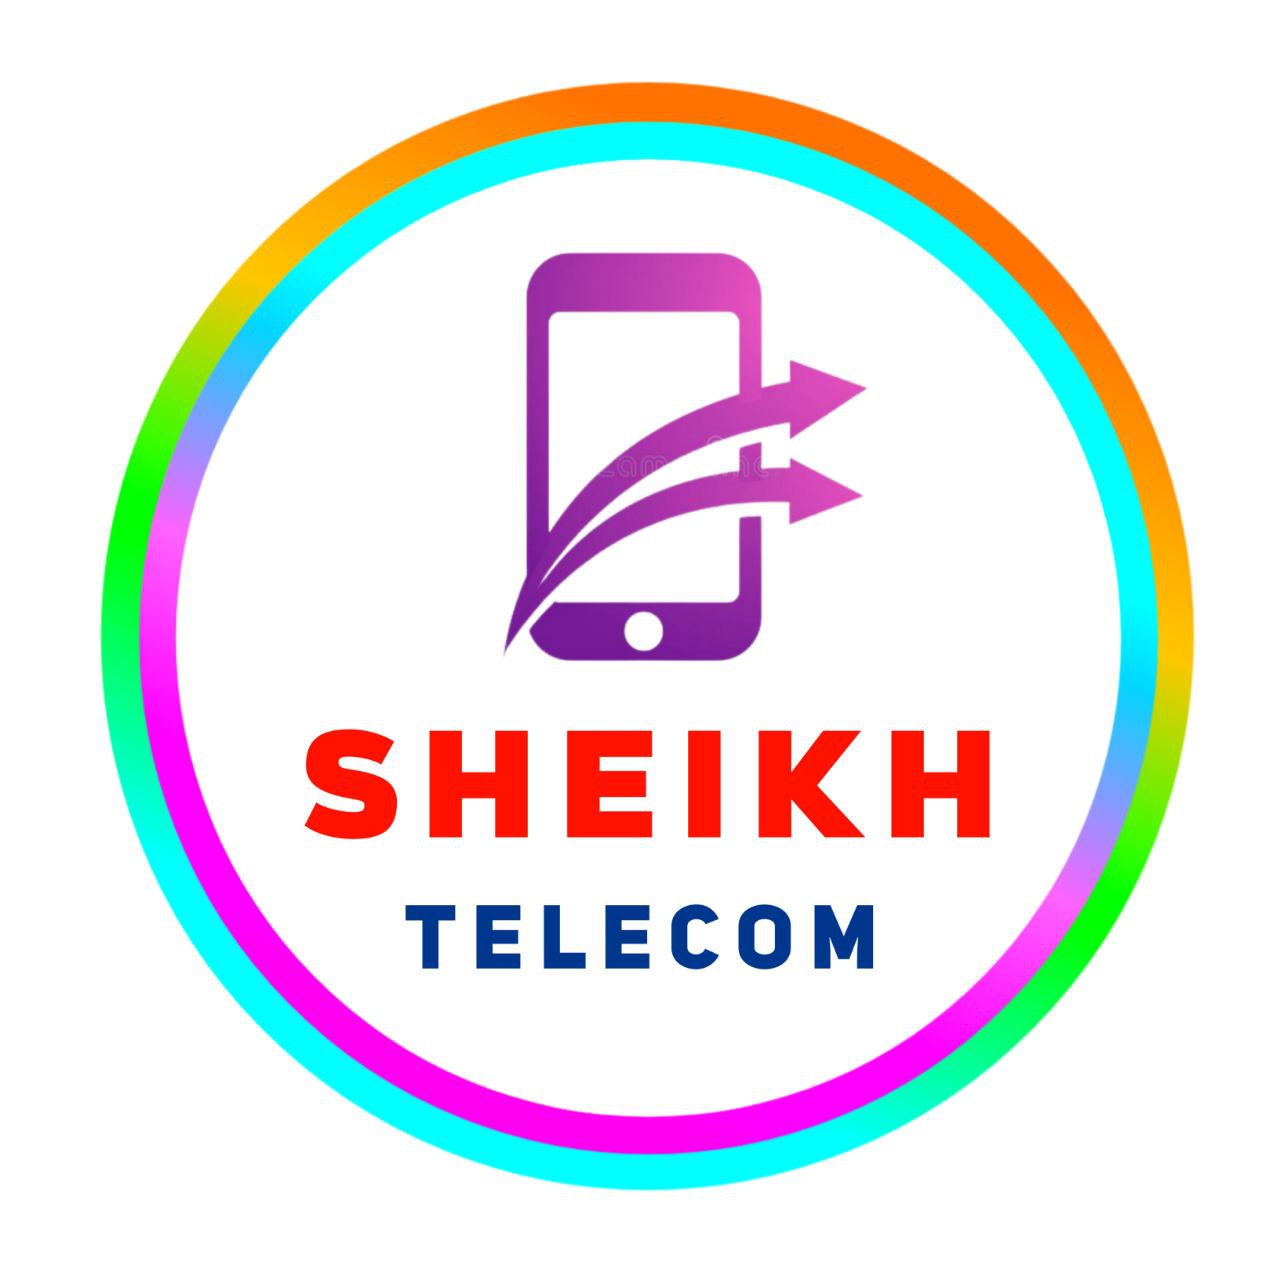 Sheikh Telecom